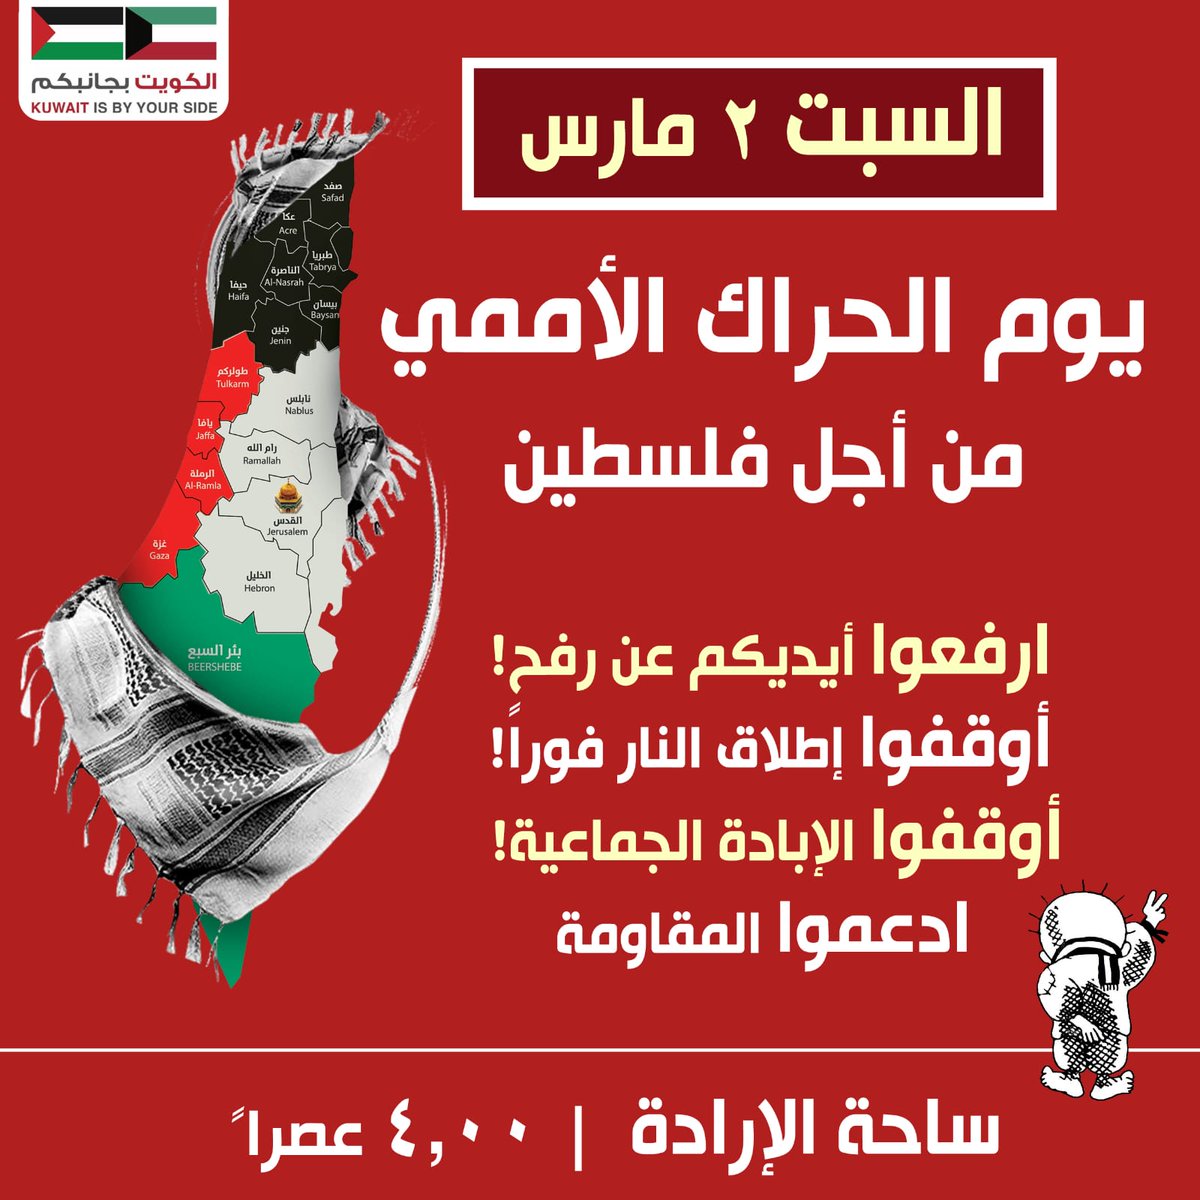 دعوة عامة للمشاركة في 'يوم الحراك الأممي من أجل فلسطين' 4:00 عصرًا غد السبت بإذن الله في ساحة الإرادة.